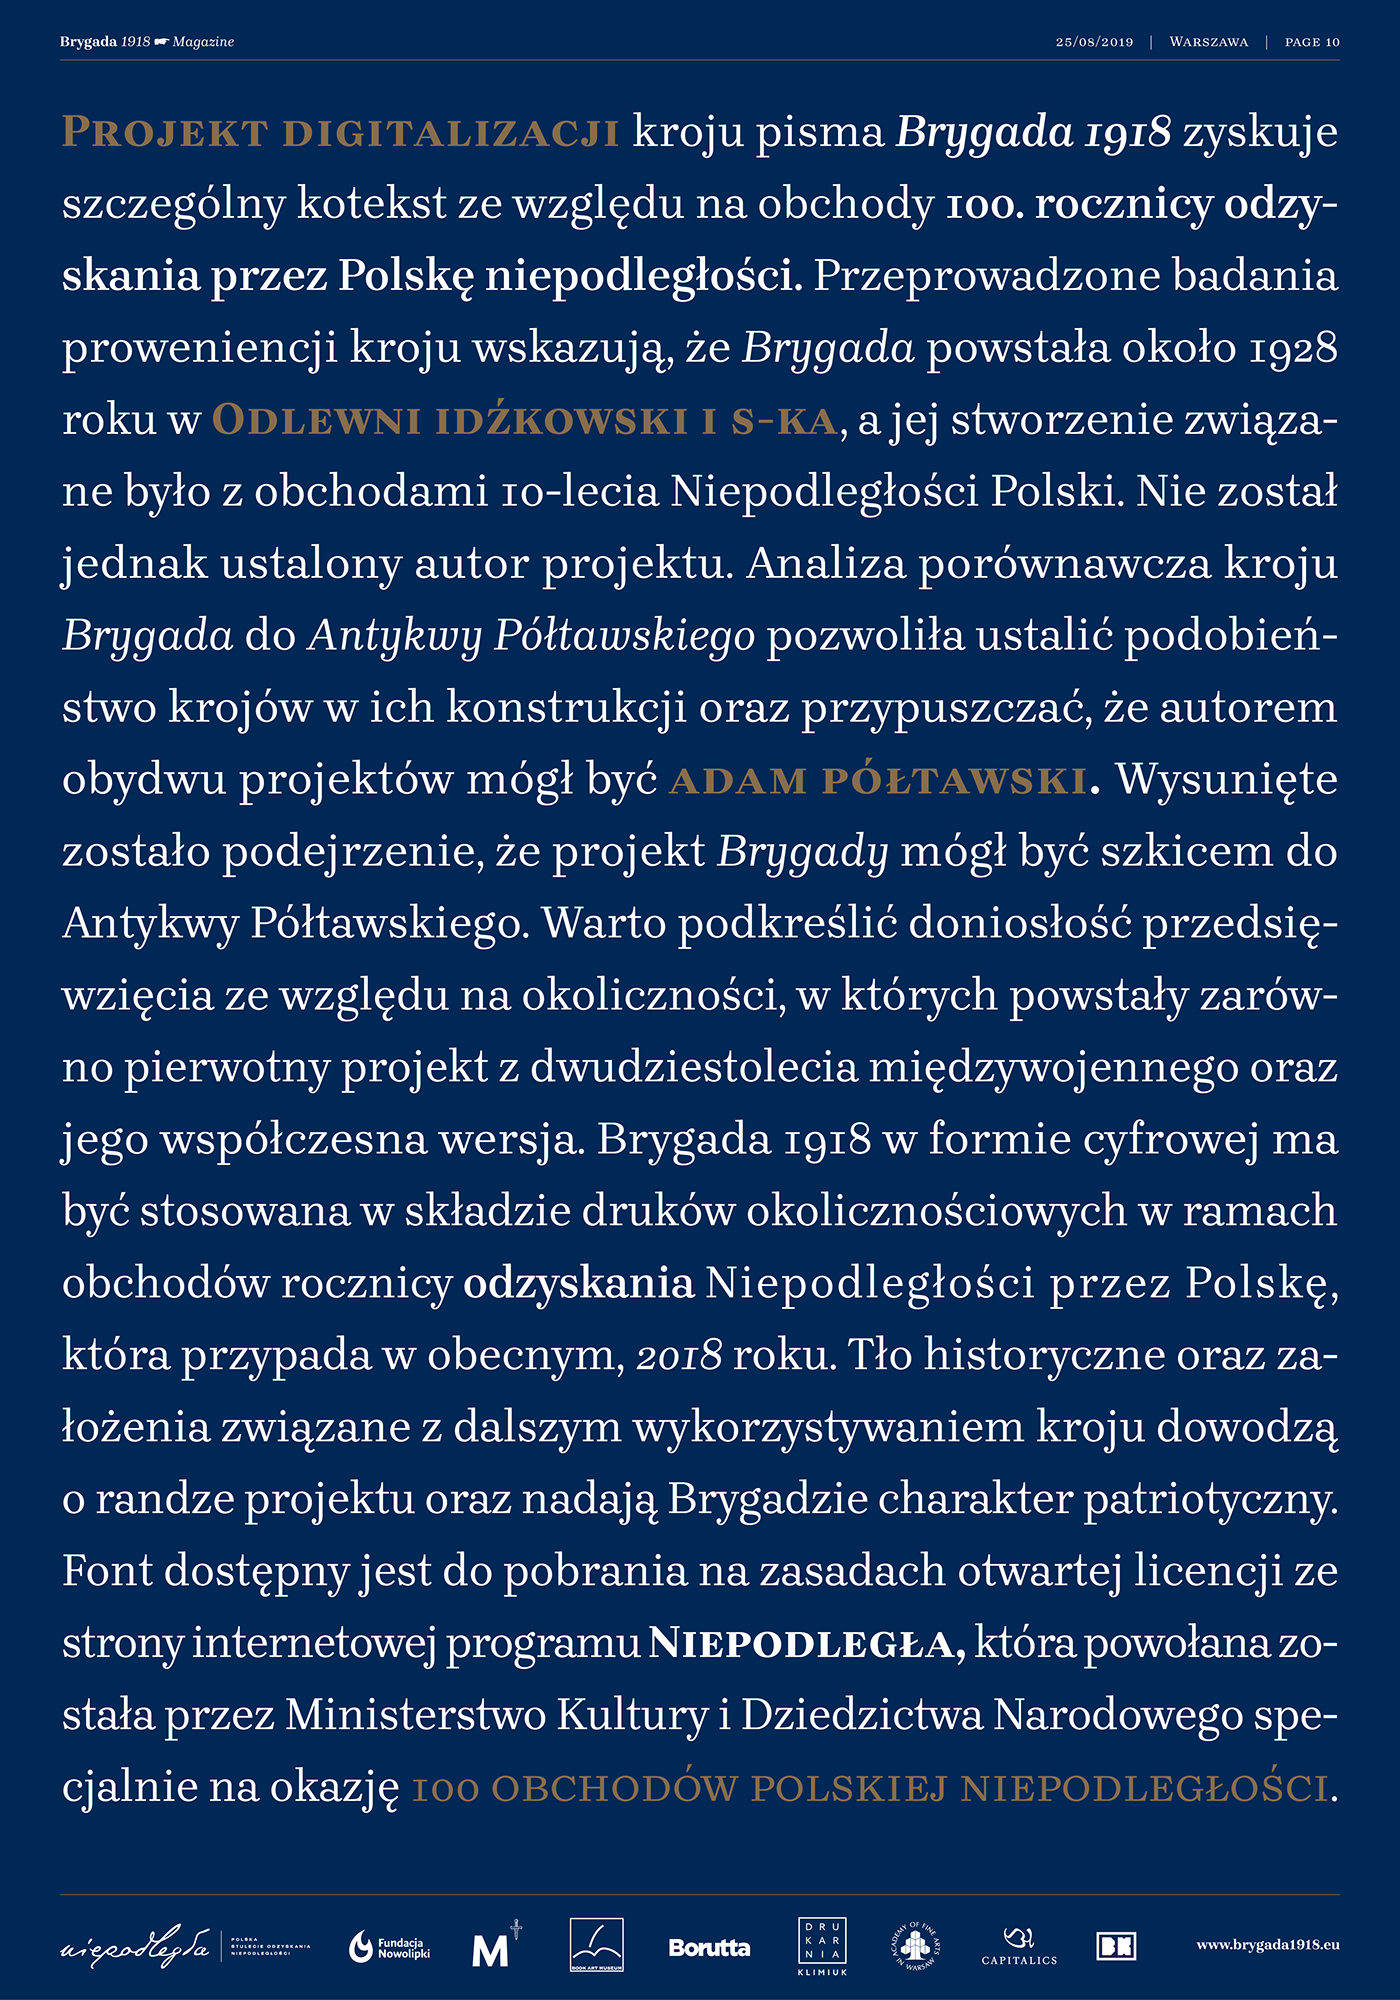 BRYGADA 1918 MACHALSKI wielunska kosmynka Free font free niepodlegla type family Didot poland